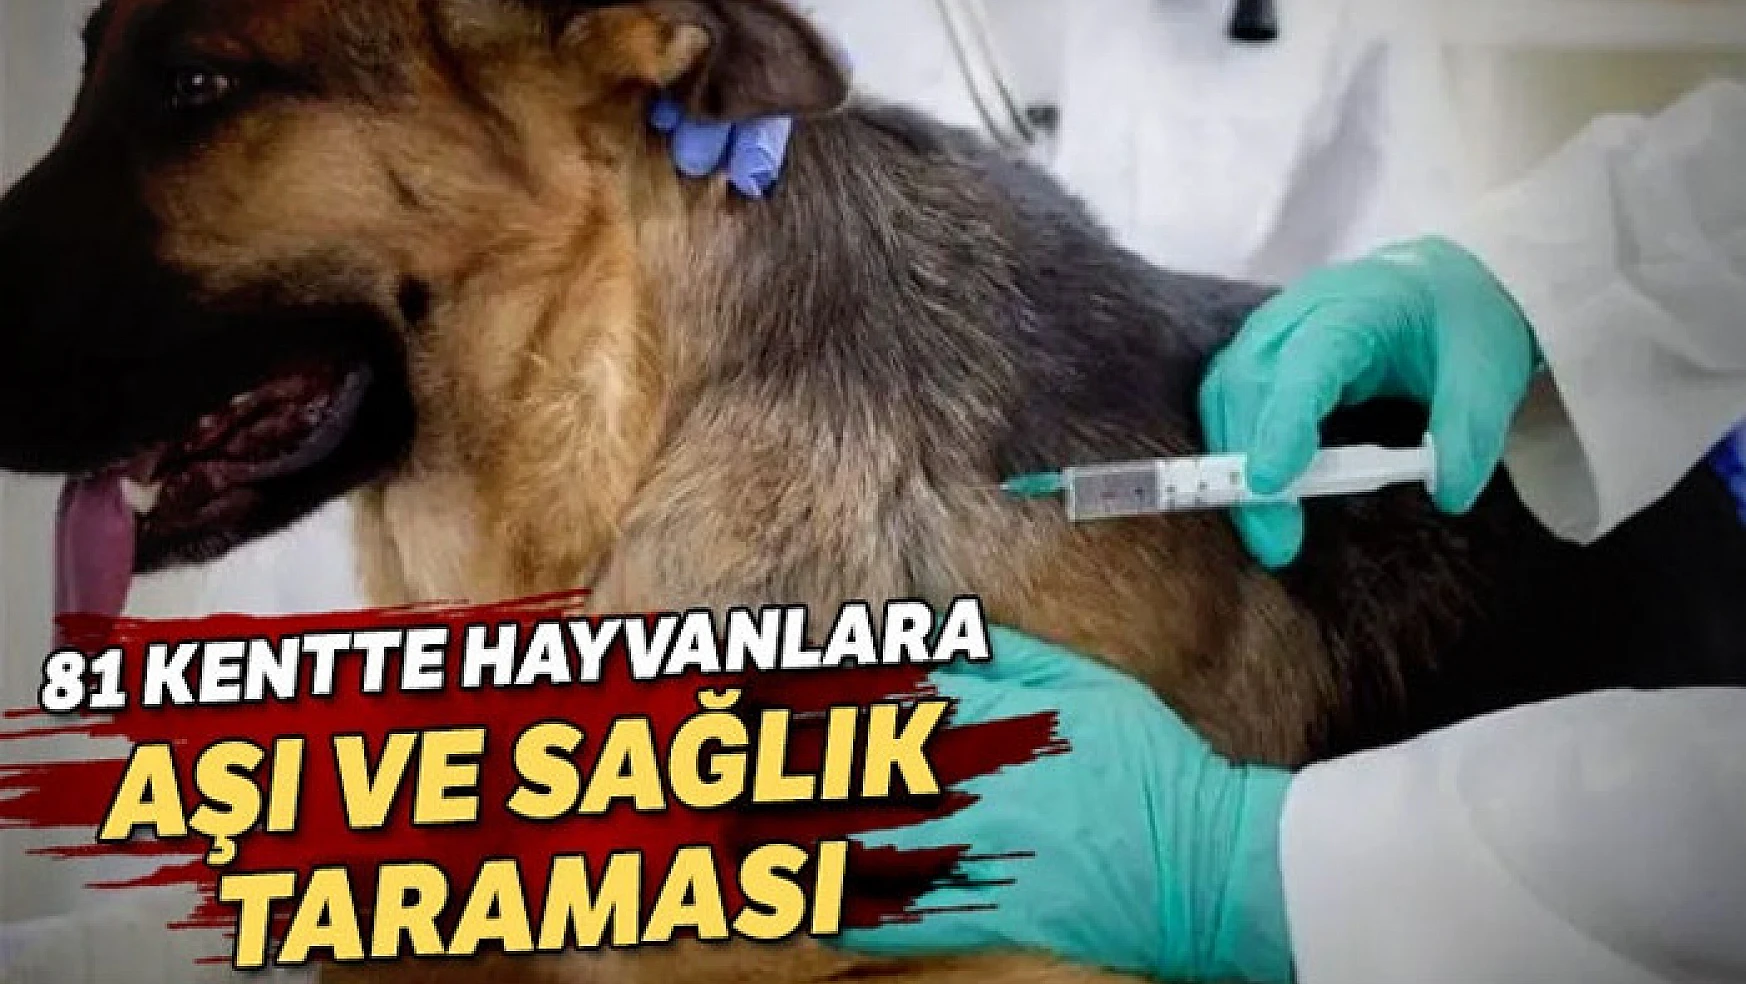 81 kentte hayvanlara aşı ve sağlık taraması